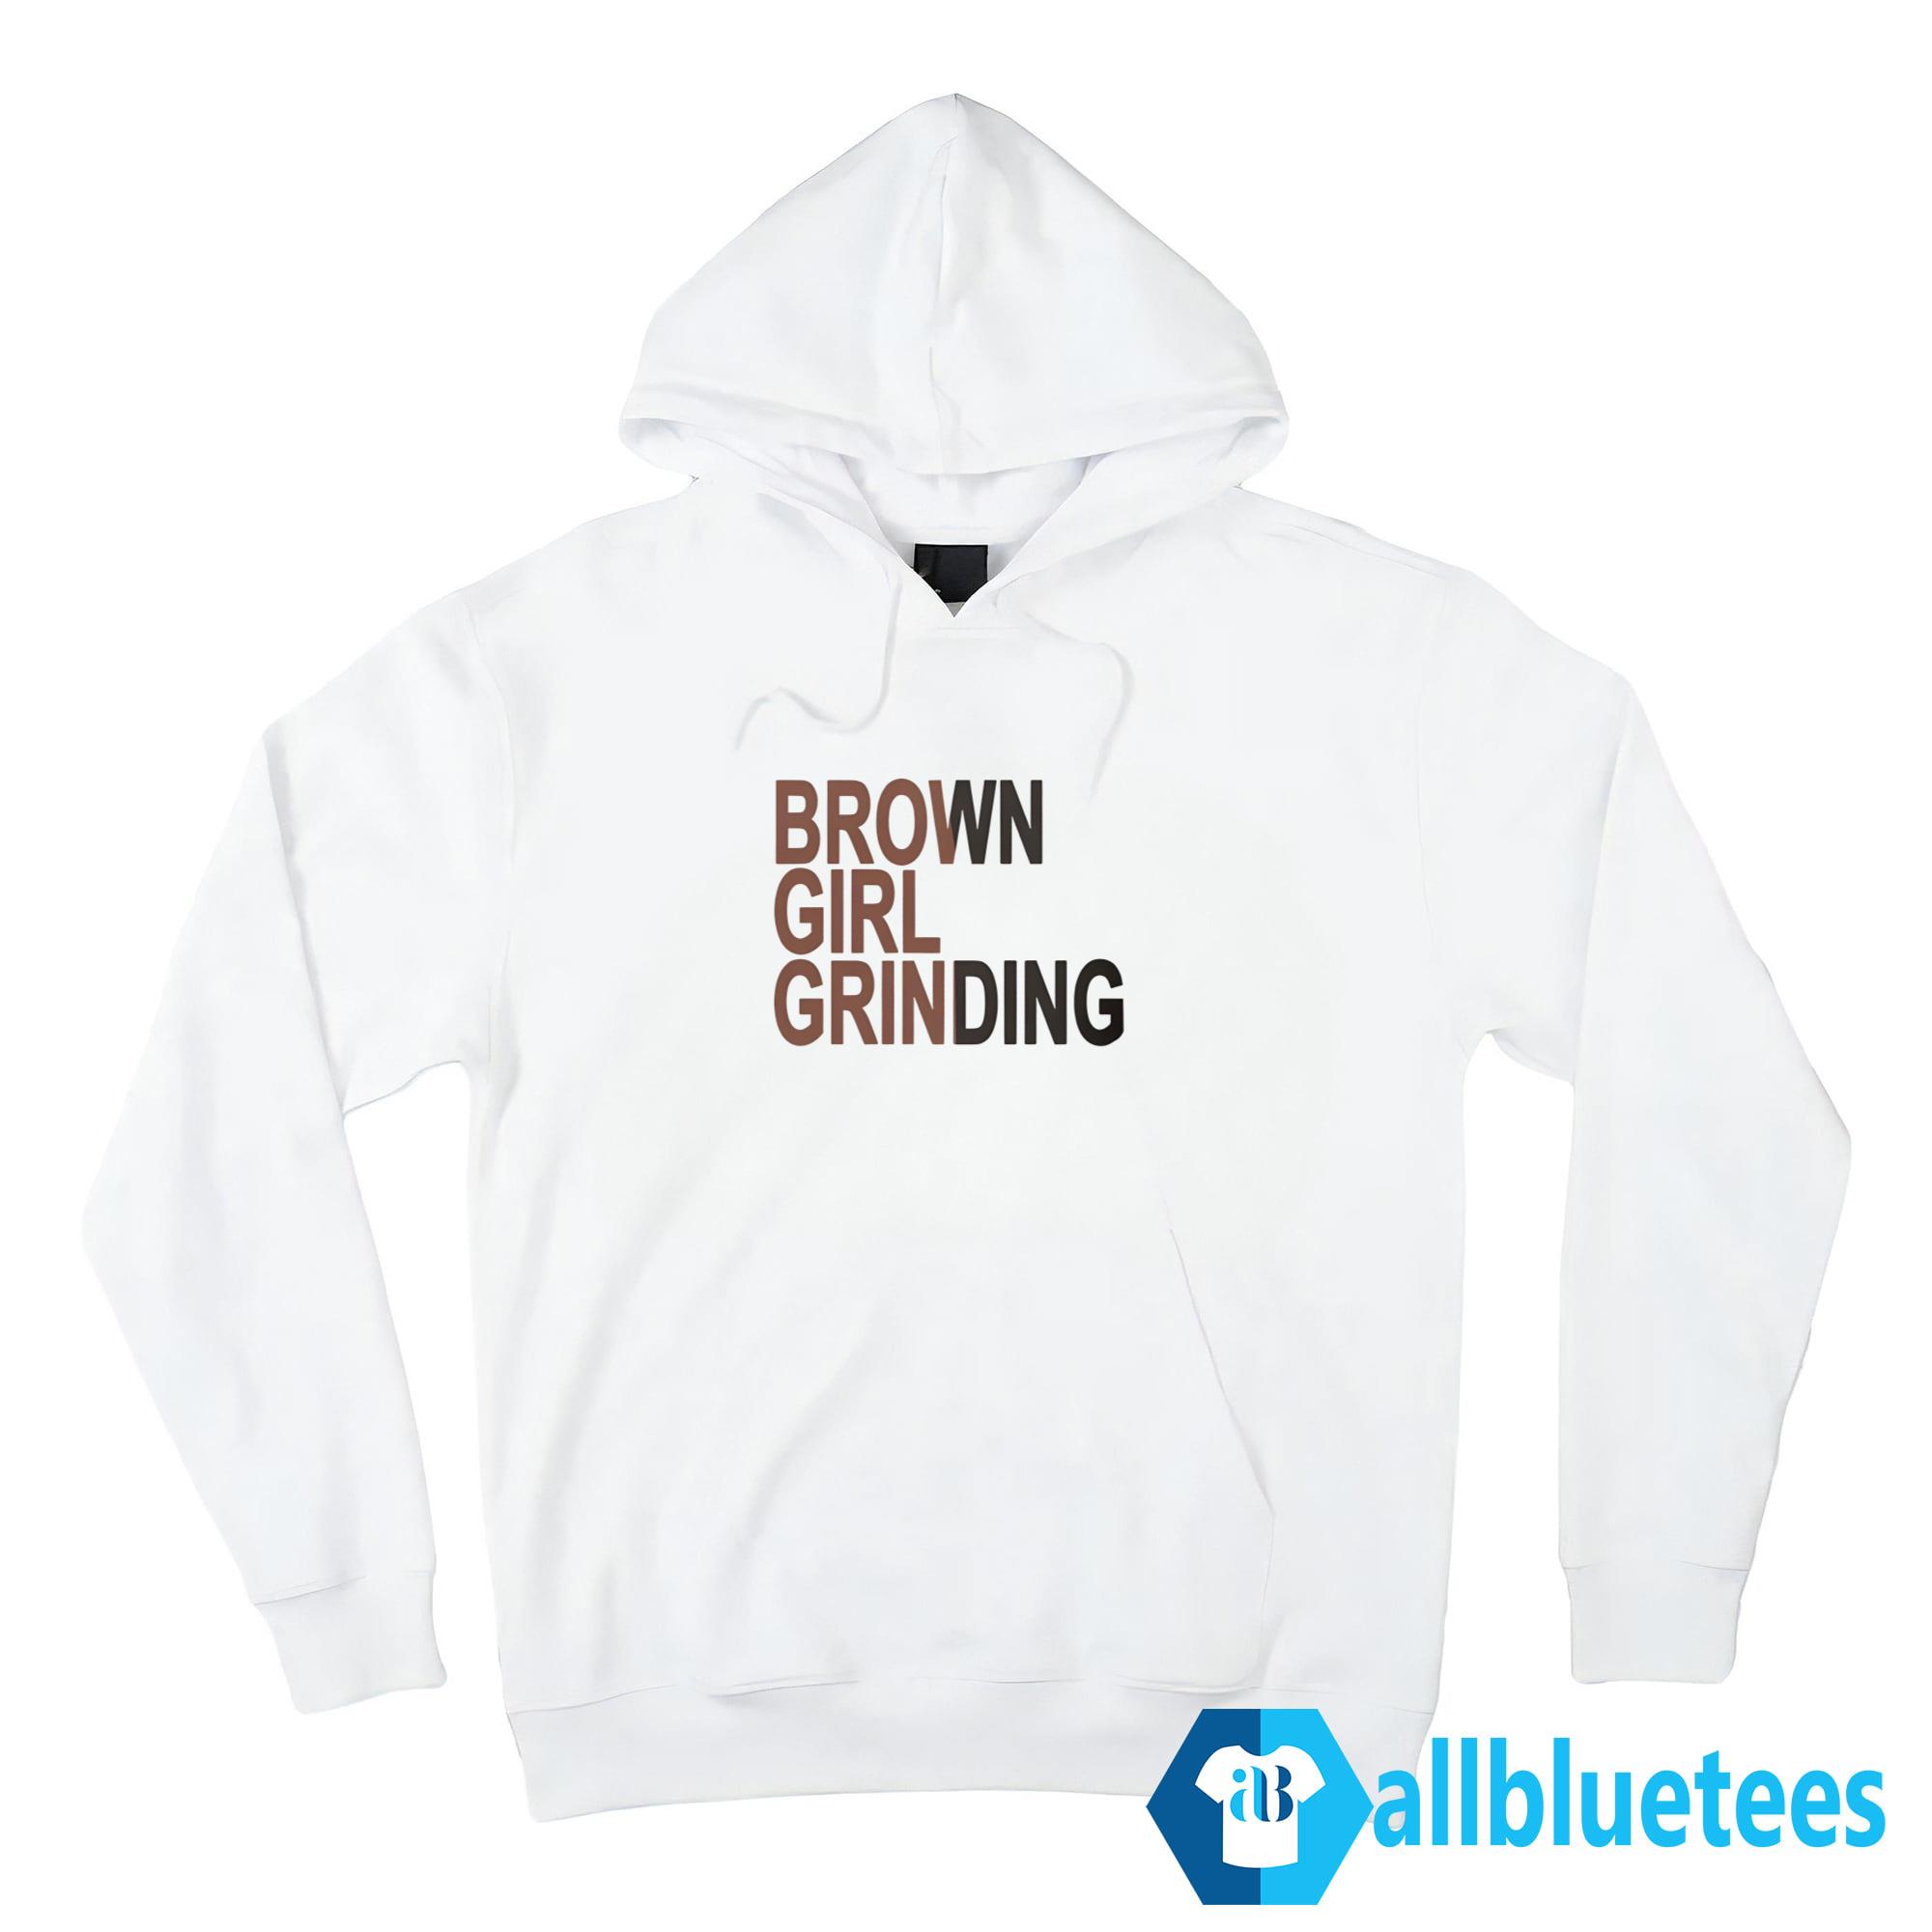 Brown Girl Grinding T-Shirt, Sweatshirt, Hoodie | Allbluetees.com